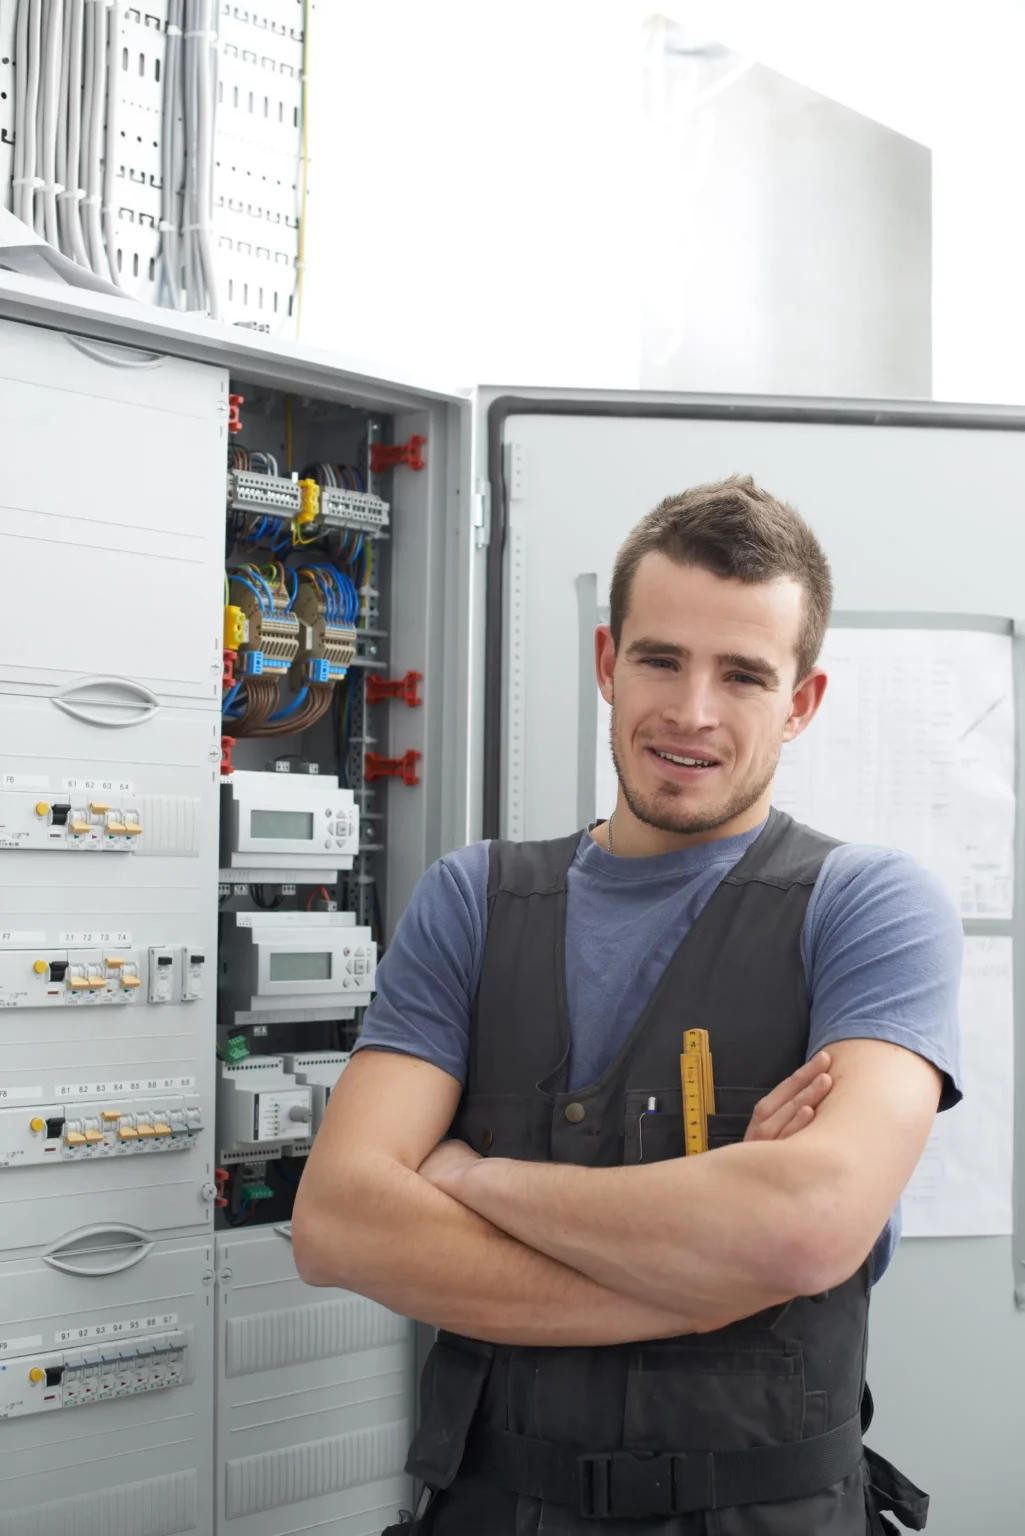 Technicien électricien souriant devant un tableau électrique, indiquant un service client professionnel pour l'installation et la maintenance électrique.